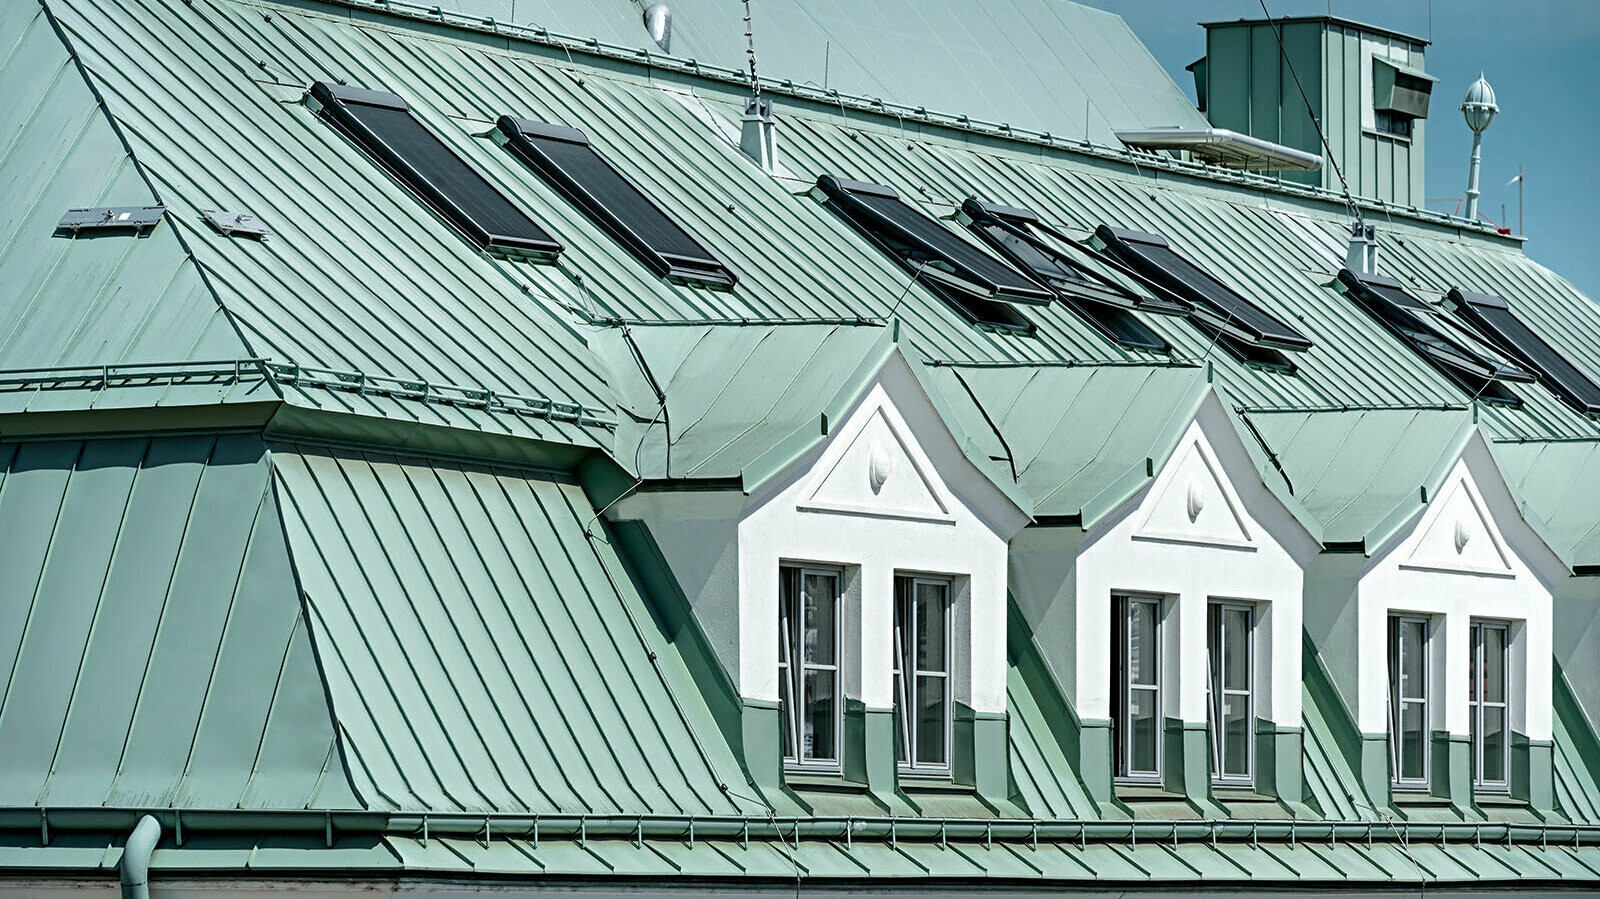 Nahaufnahme des Prefalz-Daches in P.10 patinagrün. In Mitten des Daches stechen drei weiße Dachfenstergauben hervor.